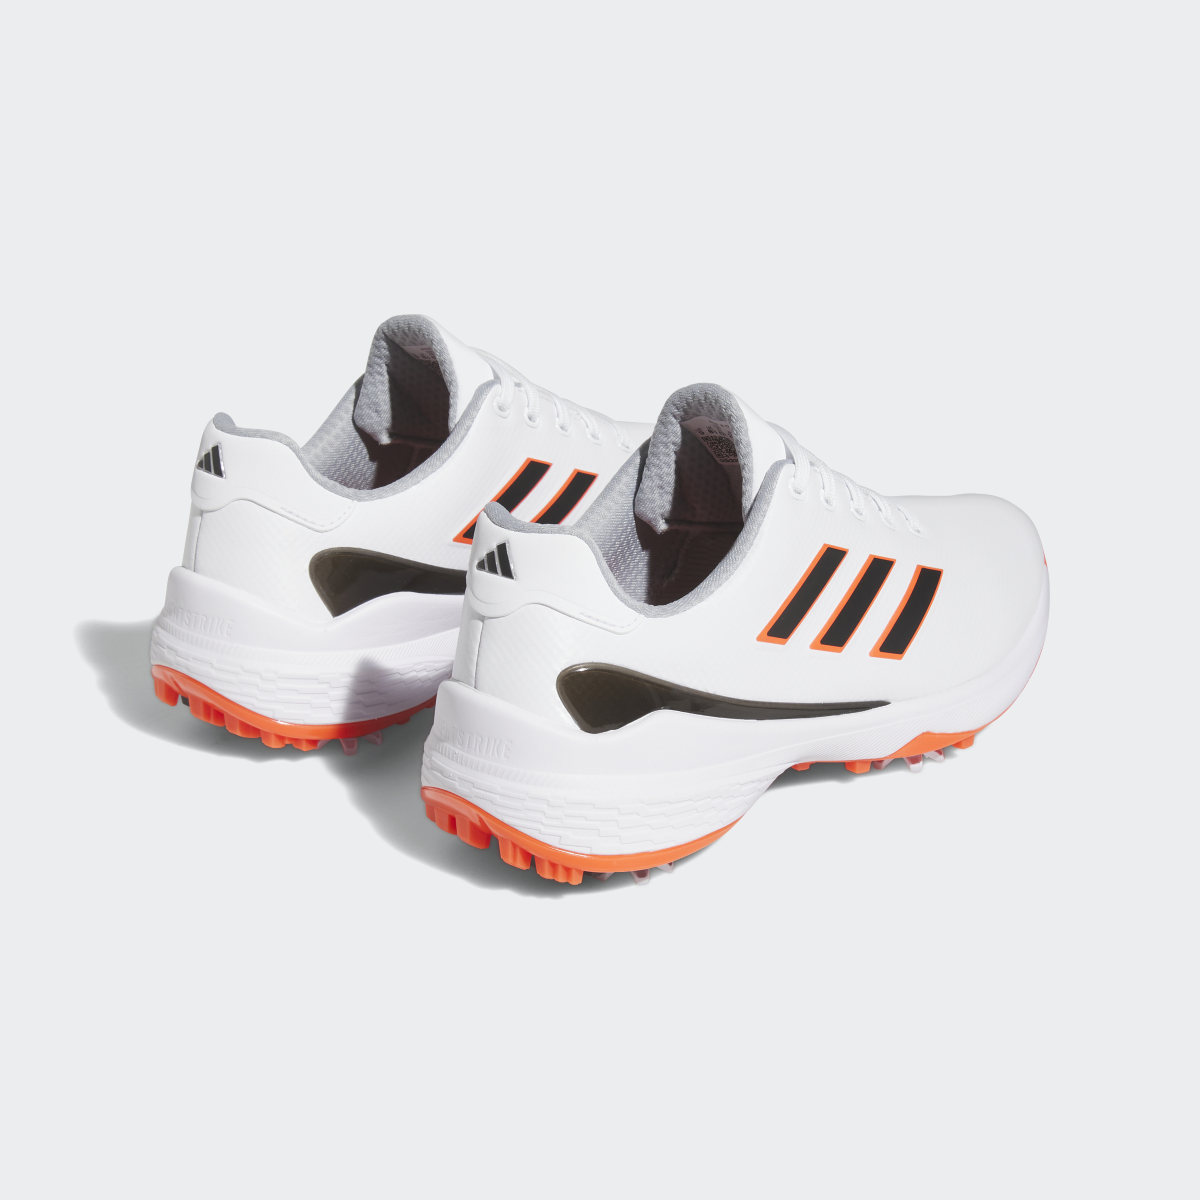 Adidas ZG23 Golf Shoes. 6